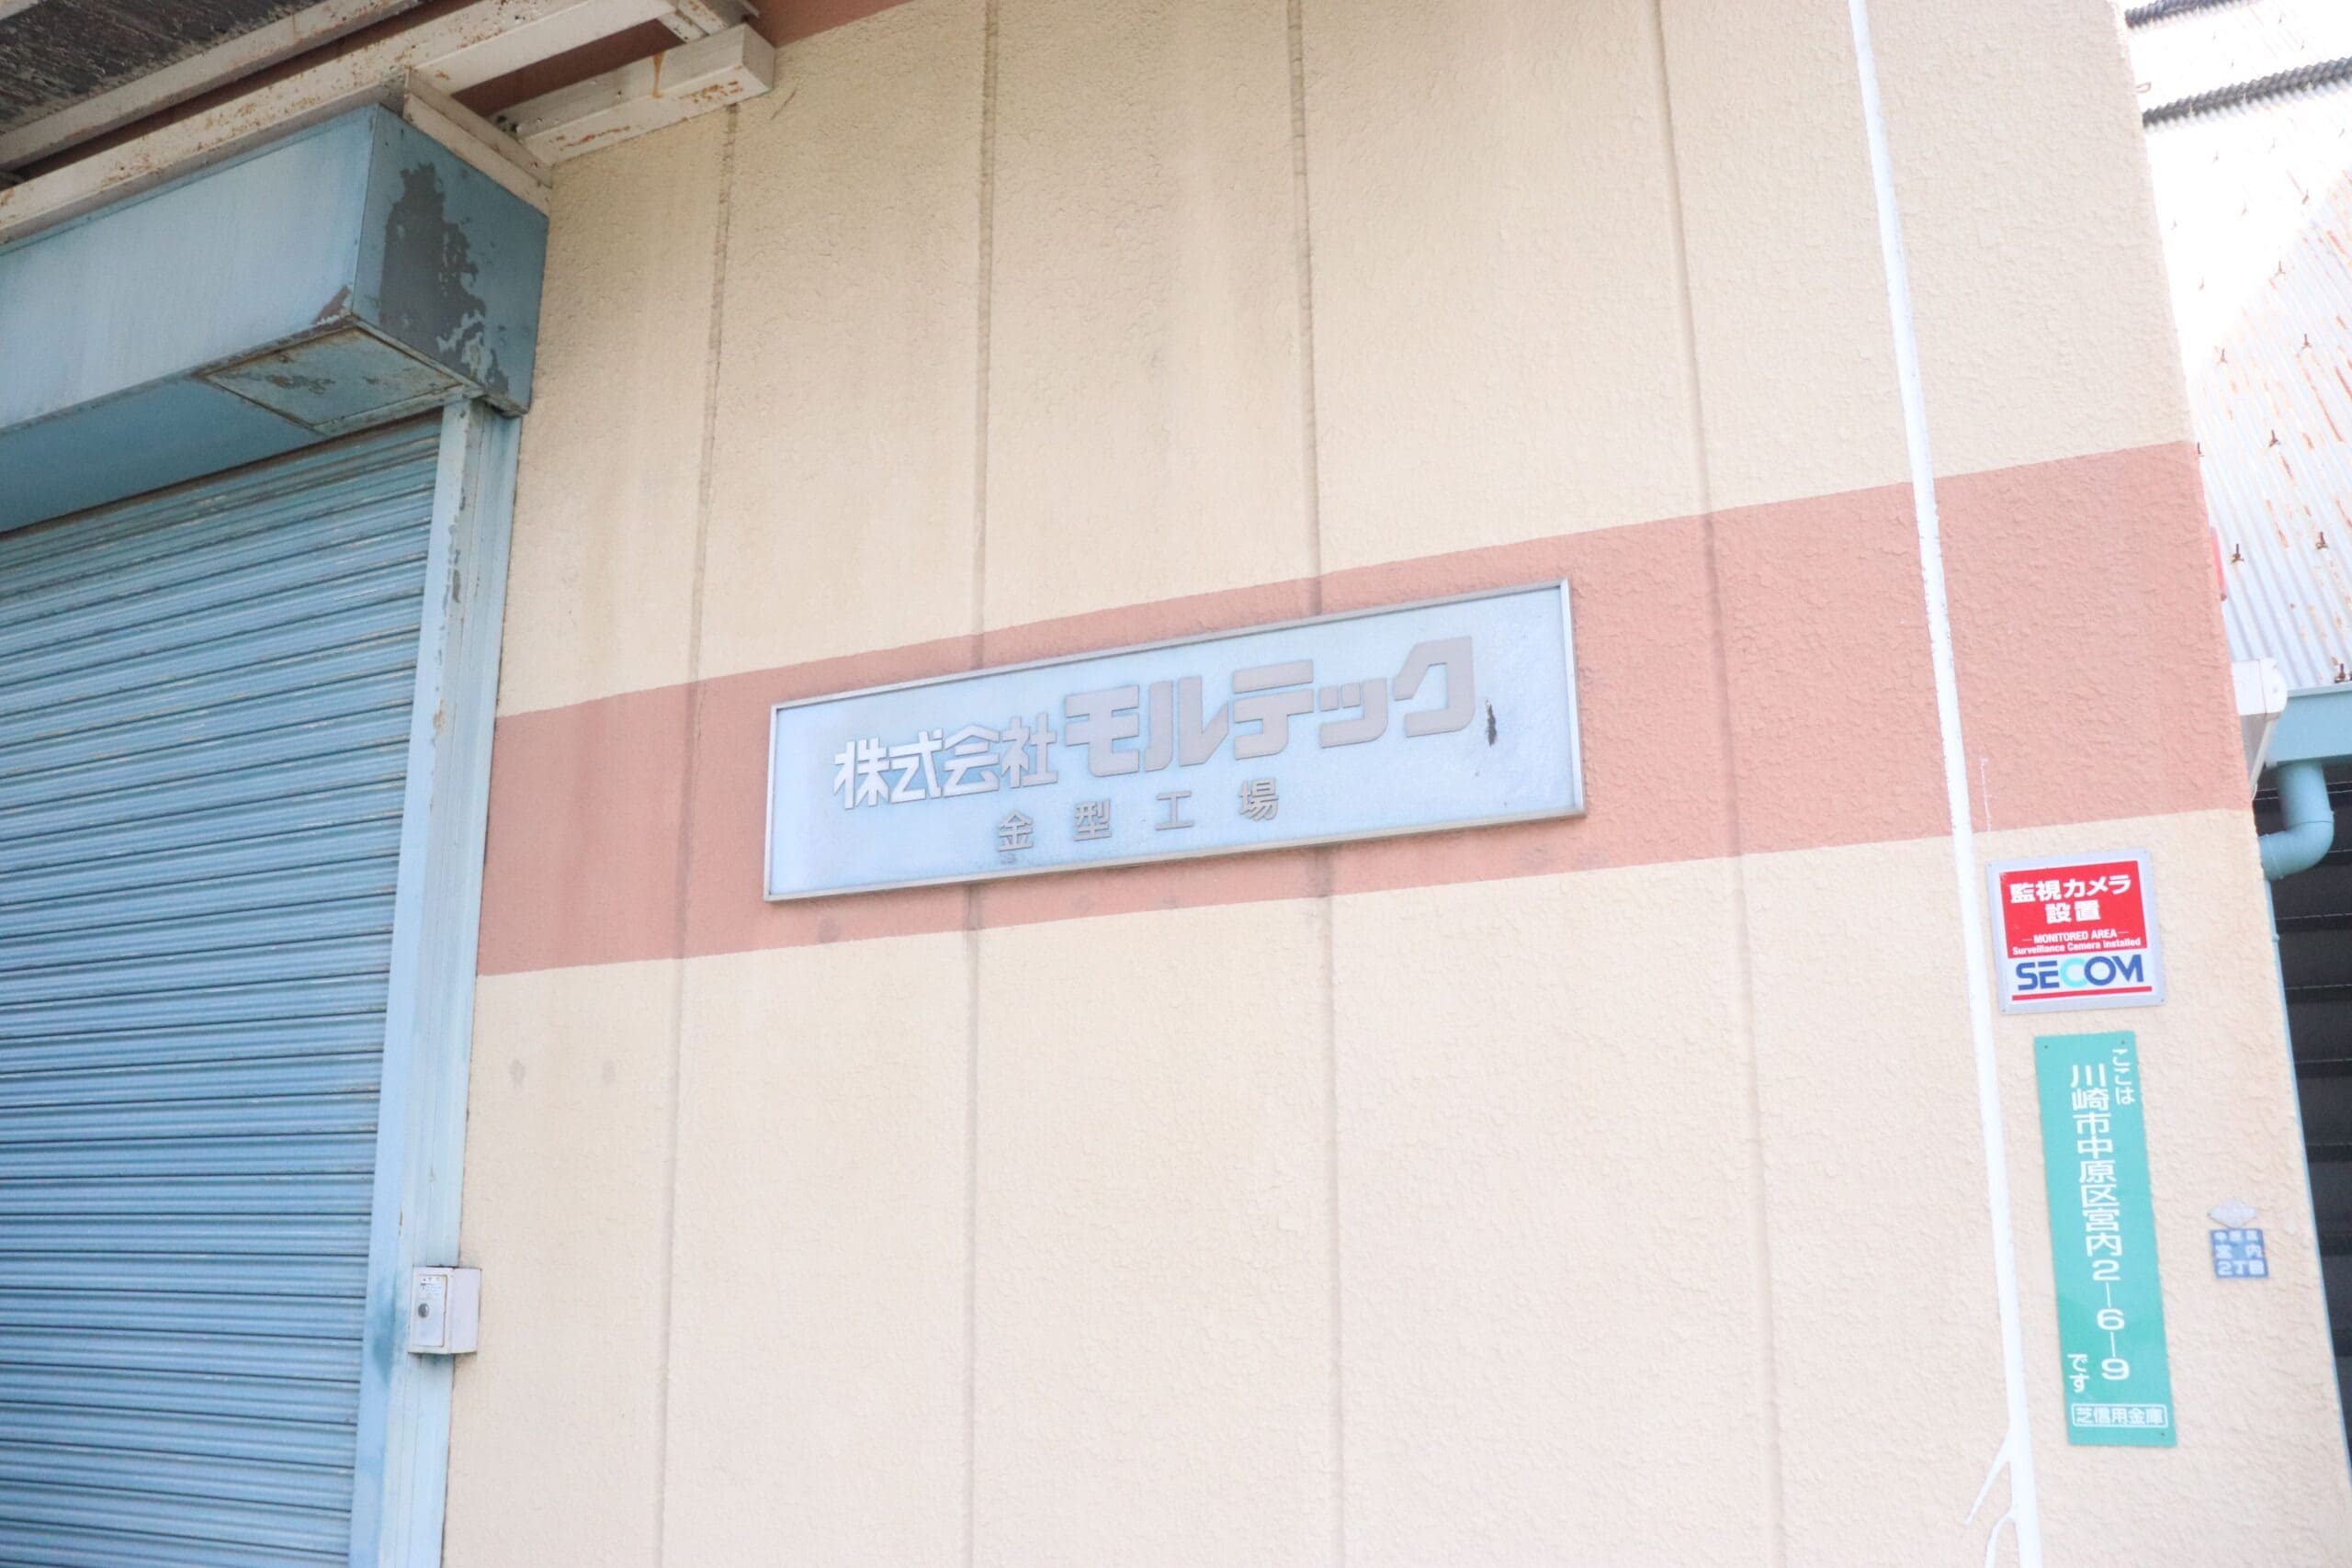 「川崎市中原区　株式会社モルテック様」の施工実績を公開しました。